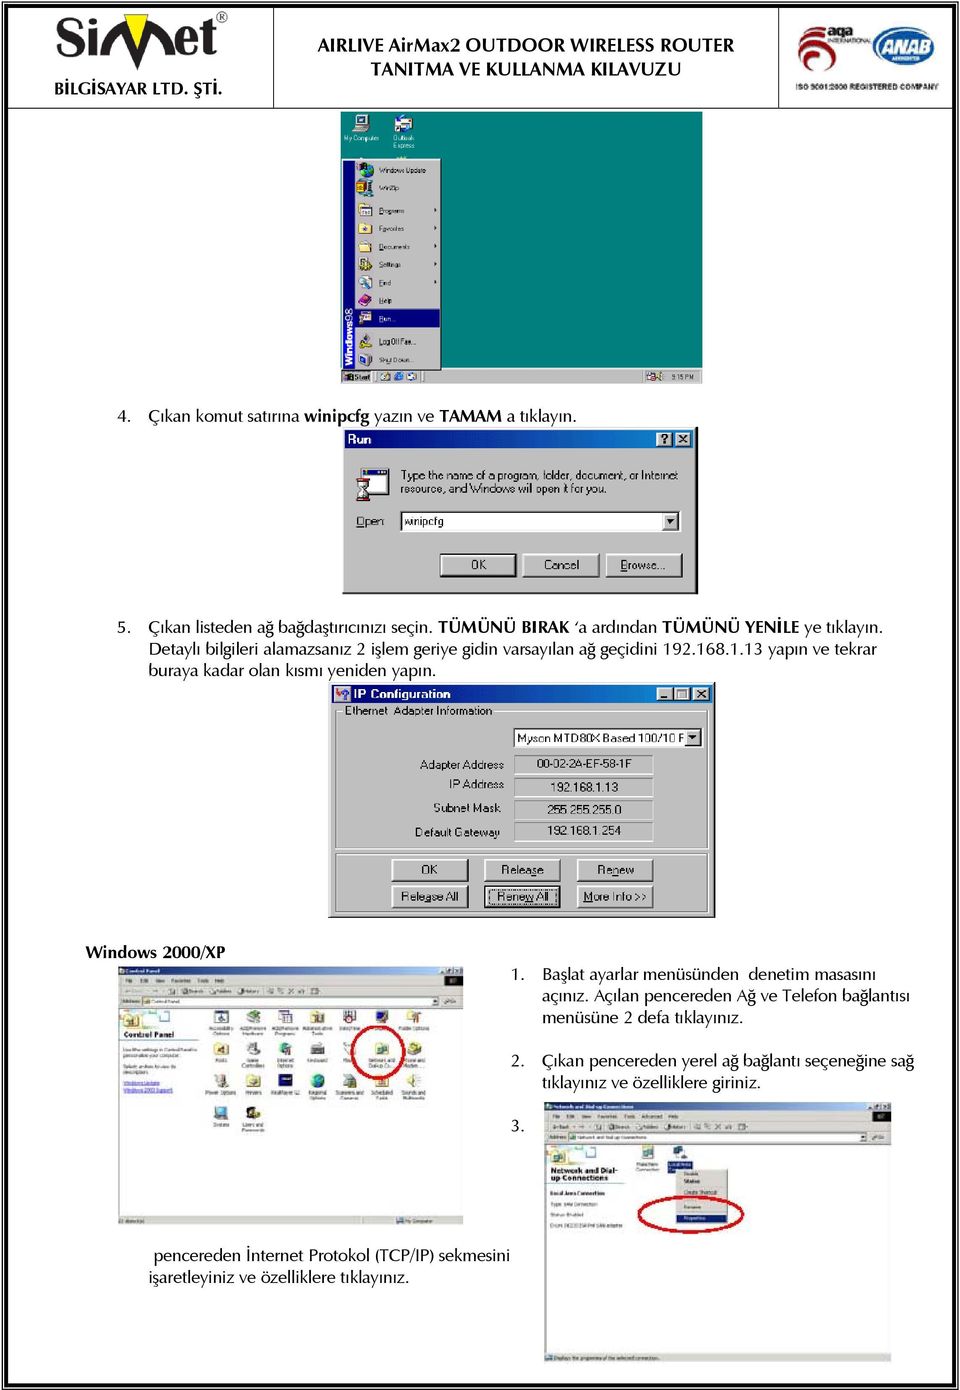 Windows 2000/XP 1. Başlat ayarlar menüsünden denetim masasını açınız. Açılan pencereden Ağ ve Telefon bağlantısı menüsüne 2 defa tıklayınız. 3.